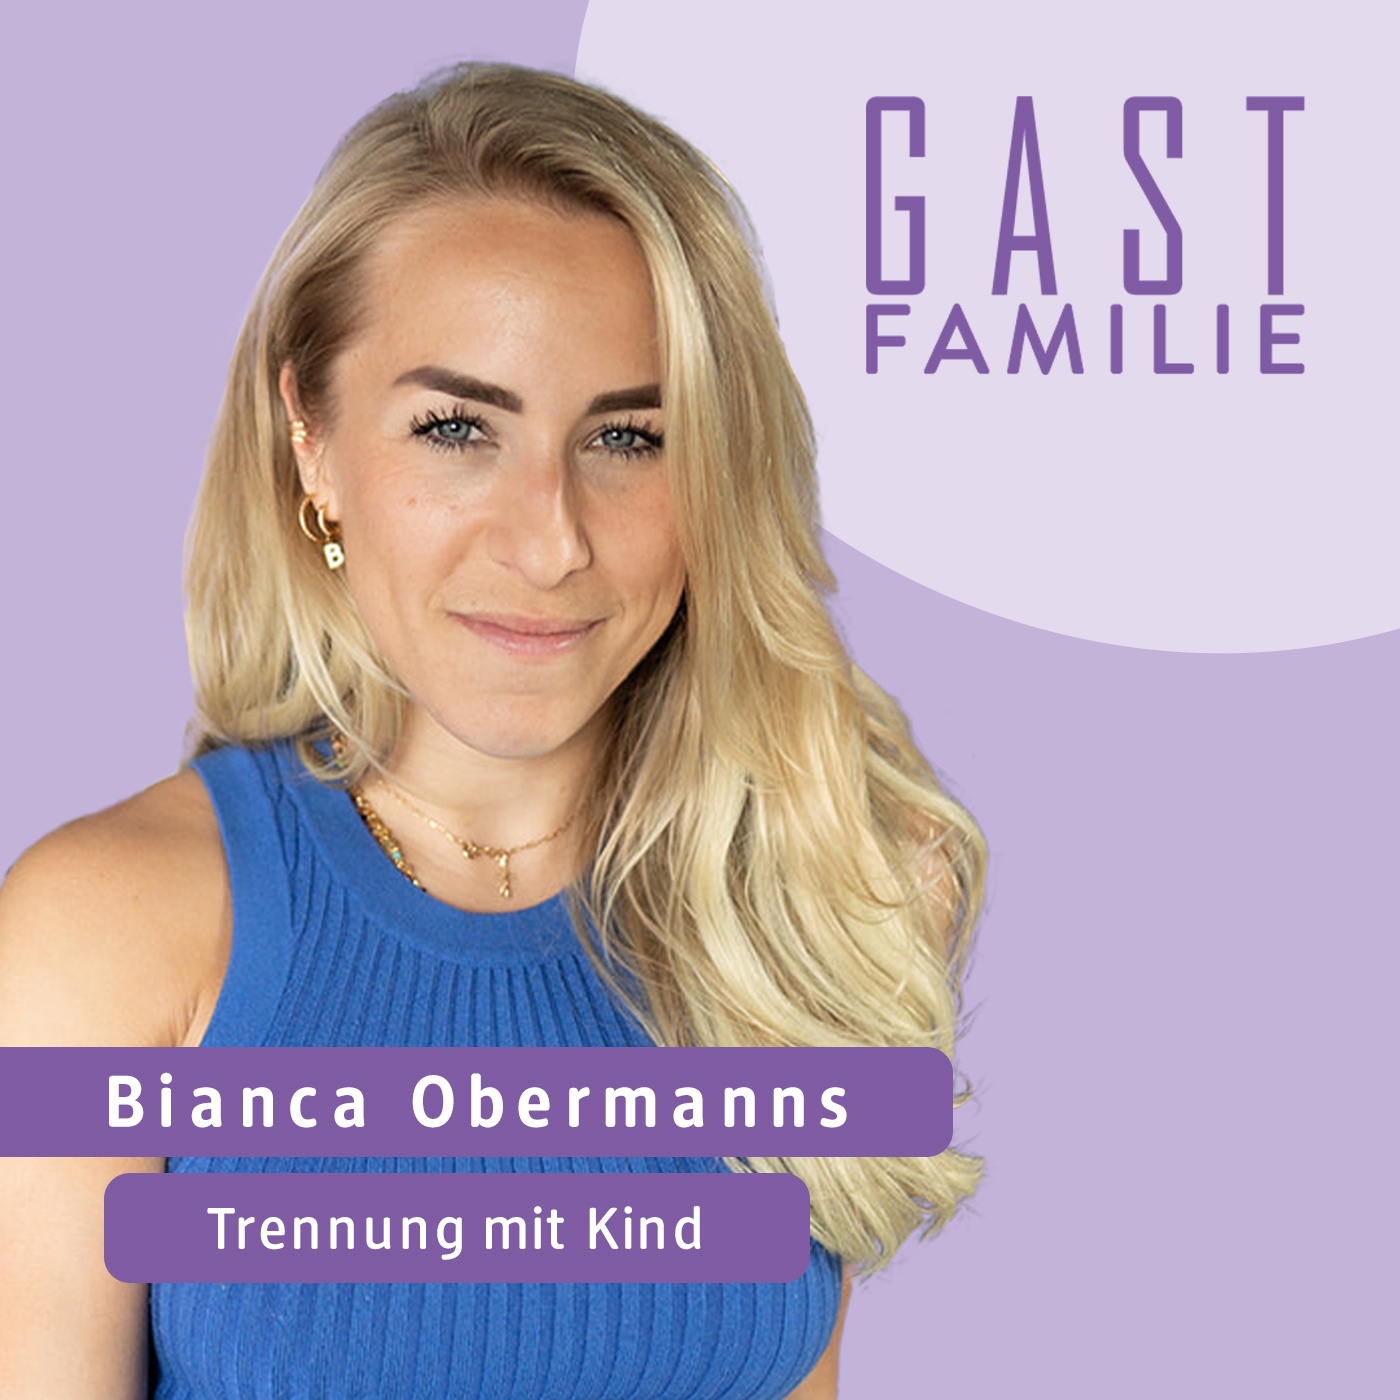 Was ist wirklich wichtig bei einer Trennung mit Kindern, Bianca Obermanns?